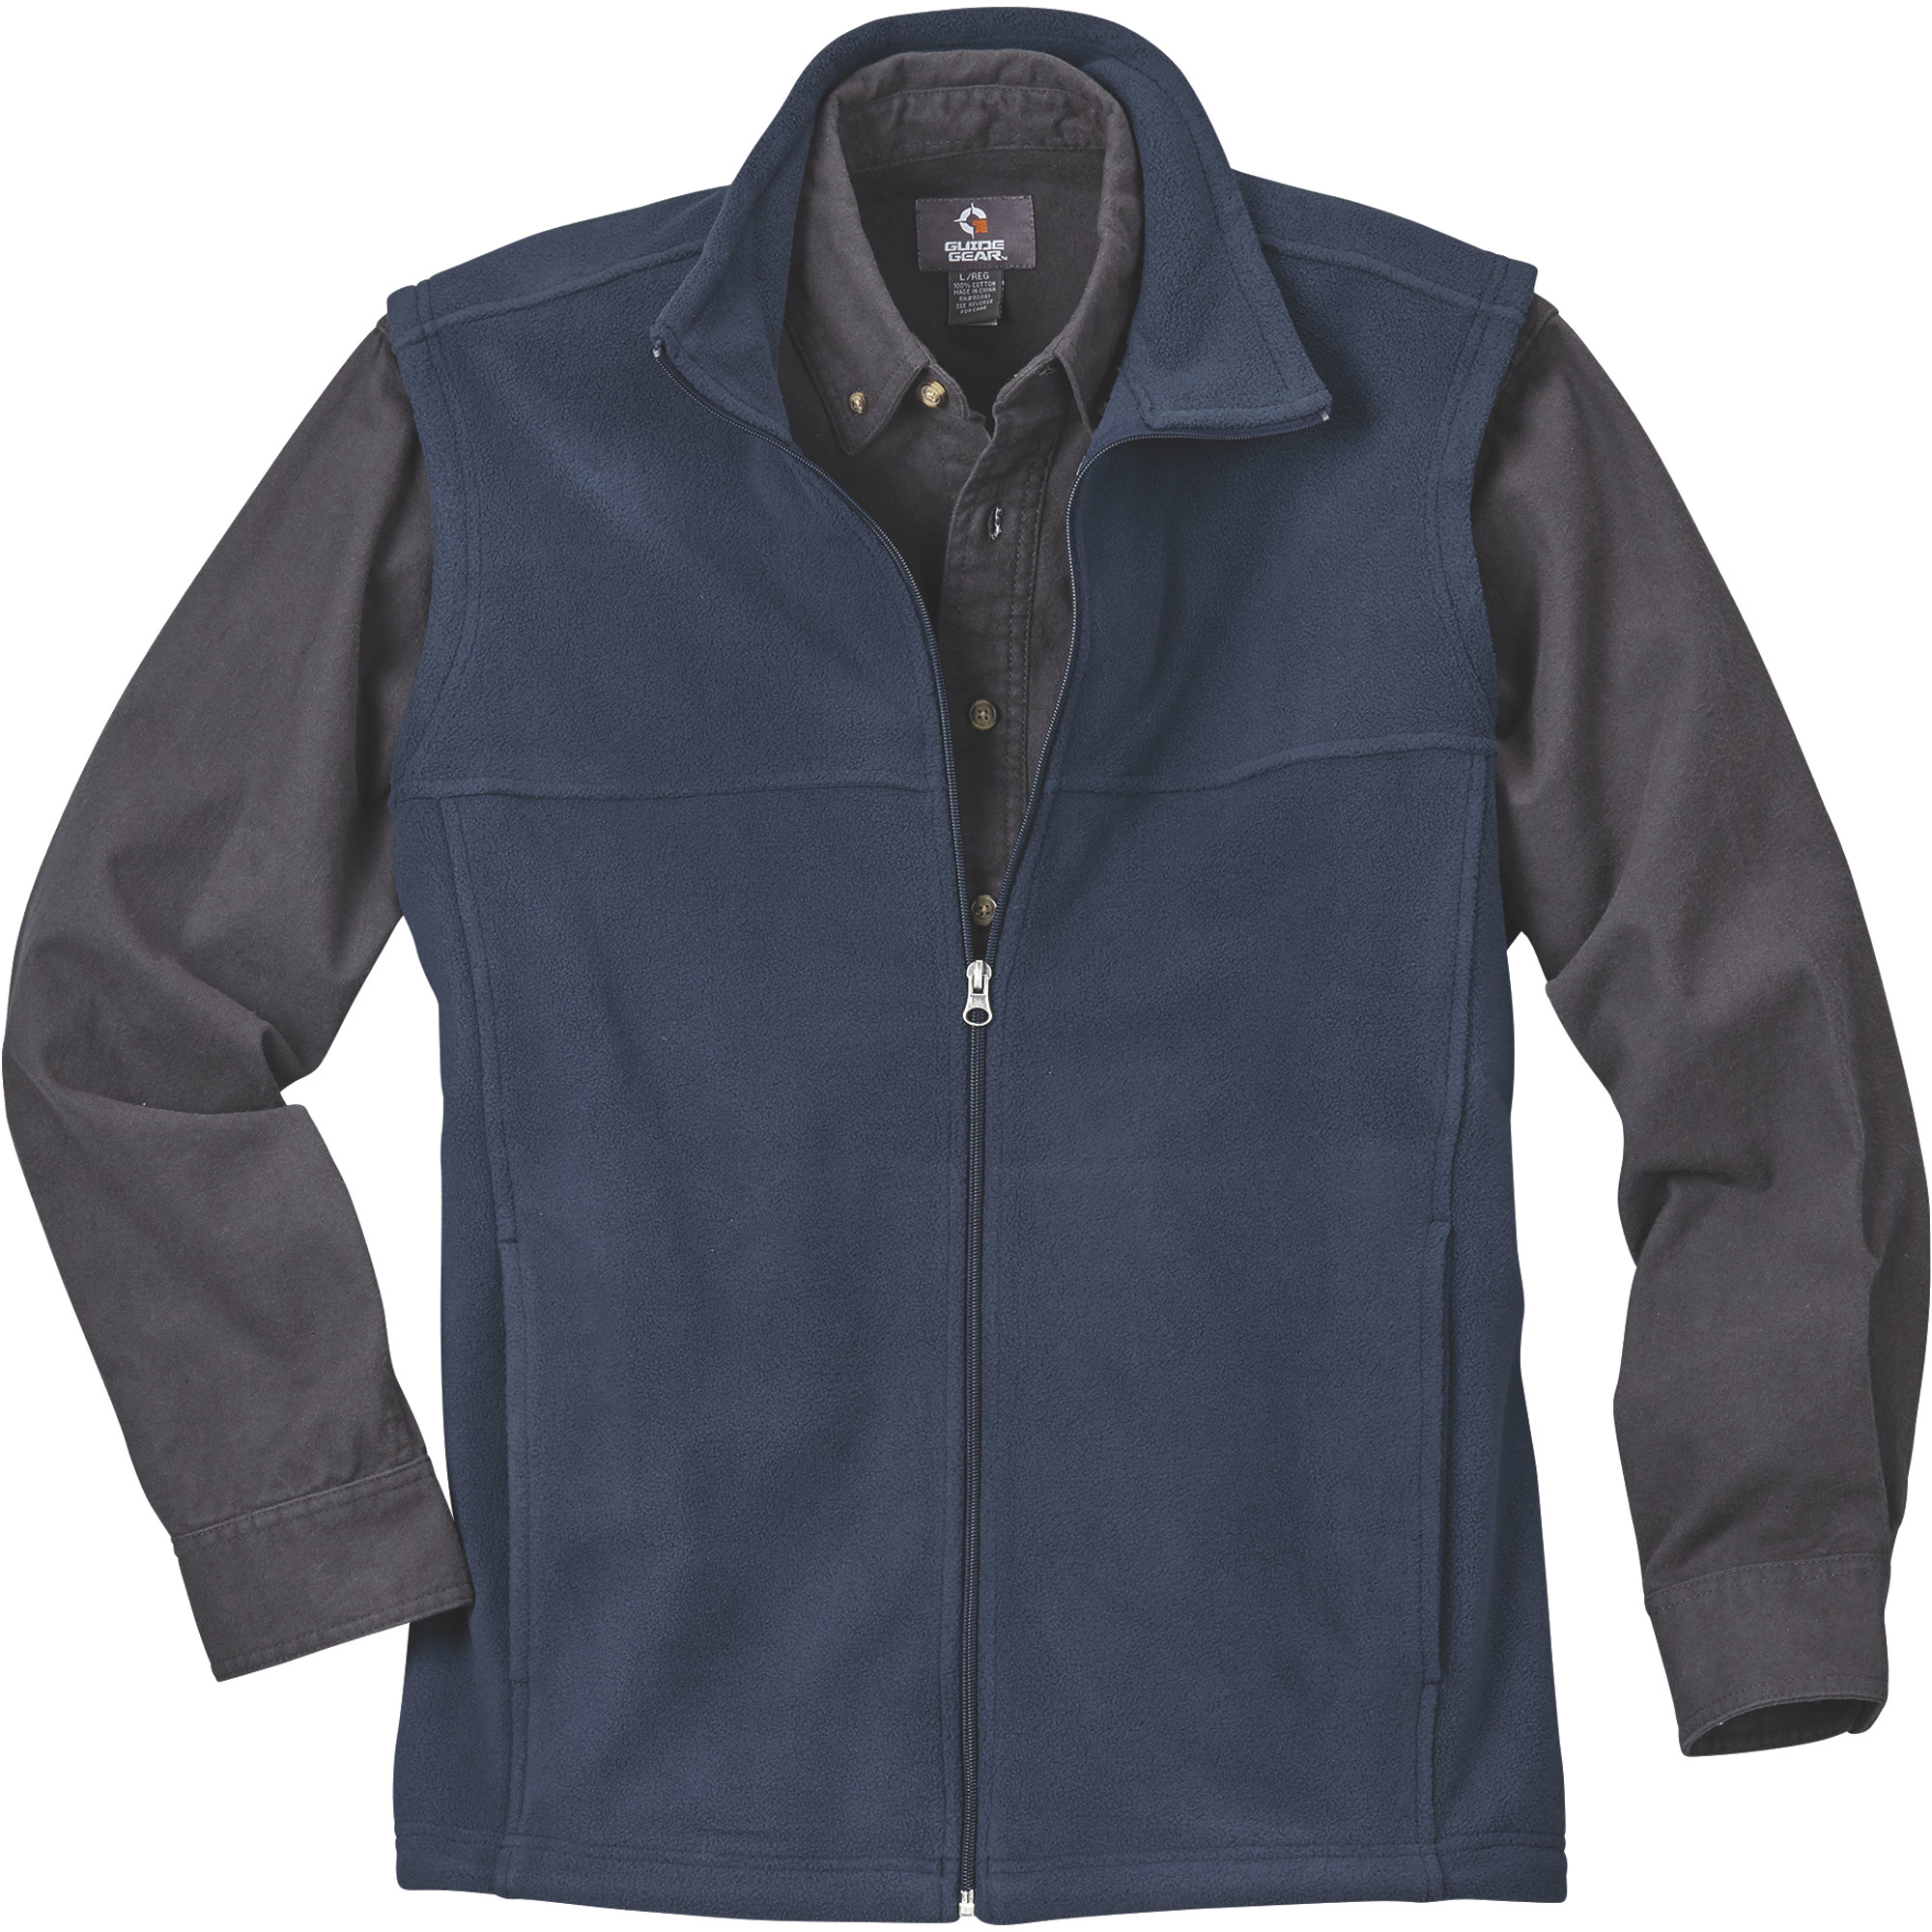 Gravel Gear Men's Zip-Up Fleece Vest â Navy, XL